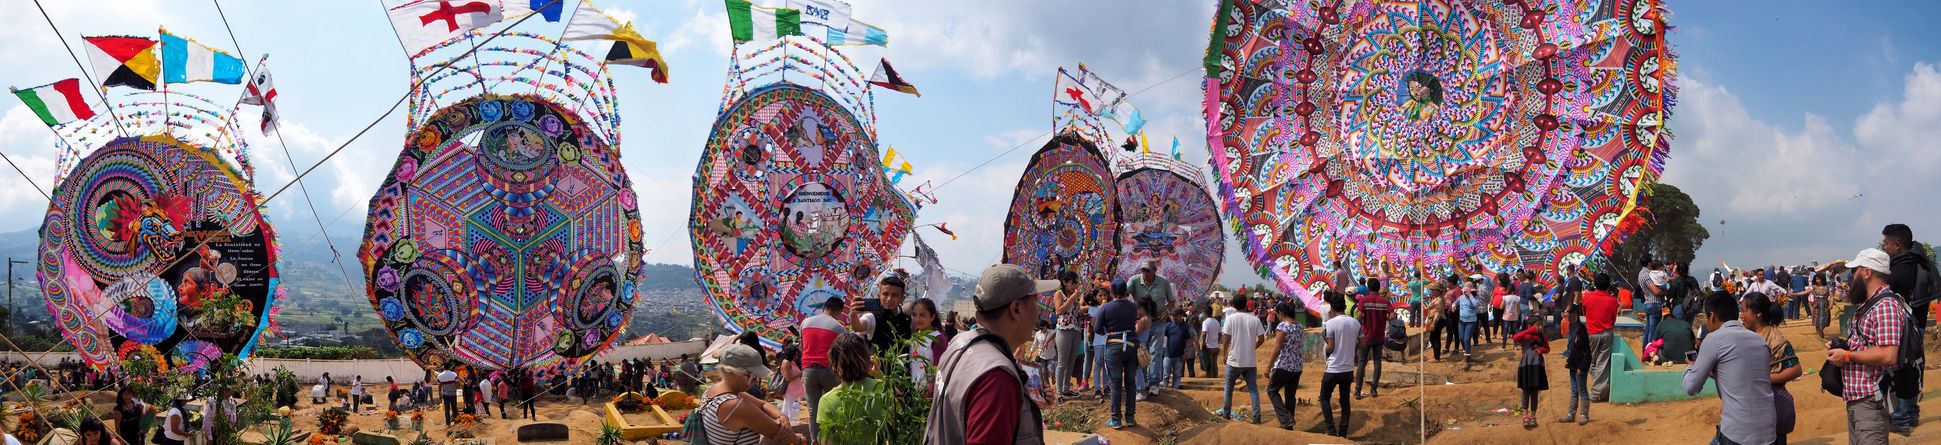 Festival de barriletes gigantes de Santiago Sacatepéquez